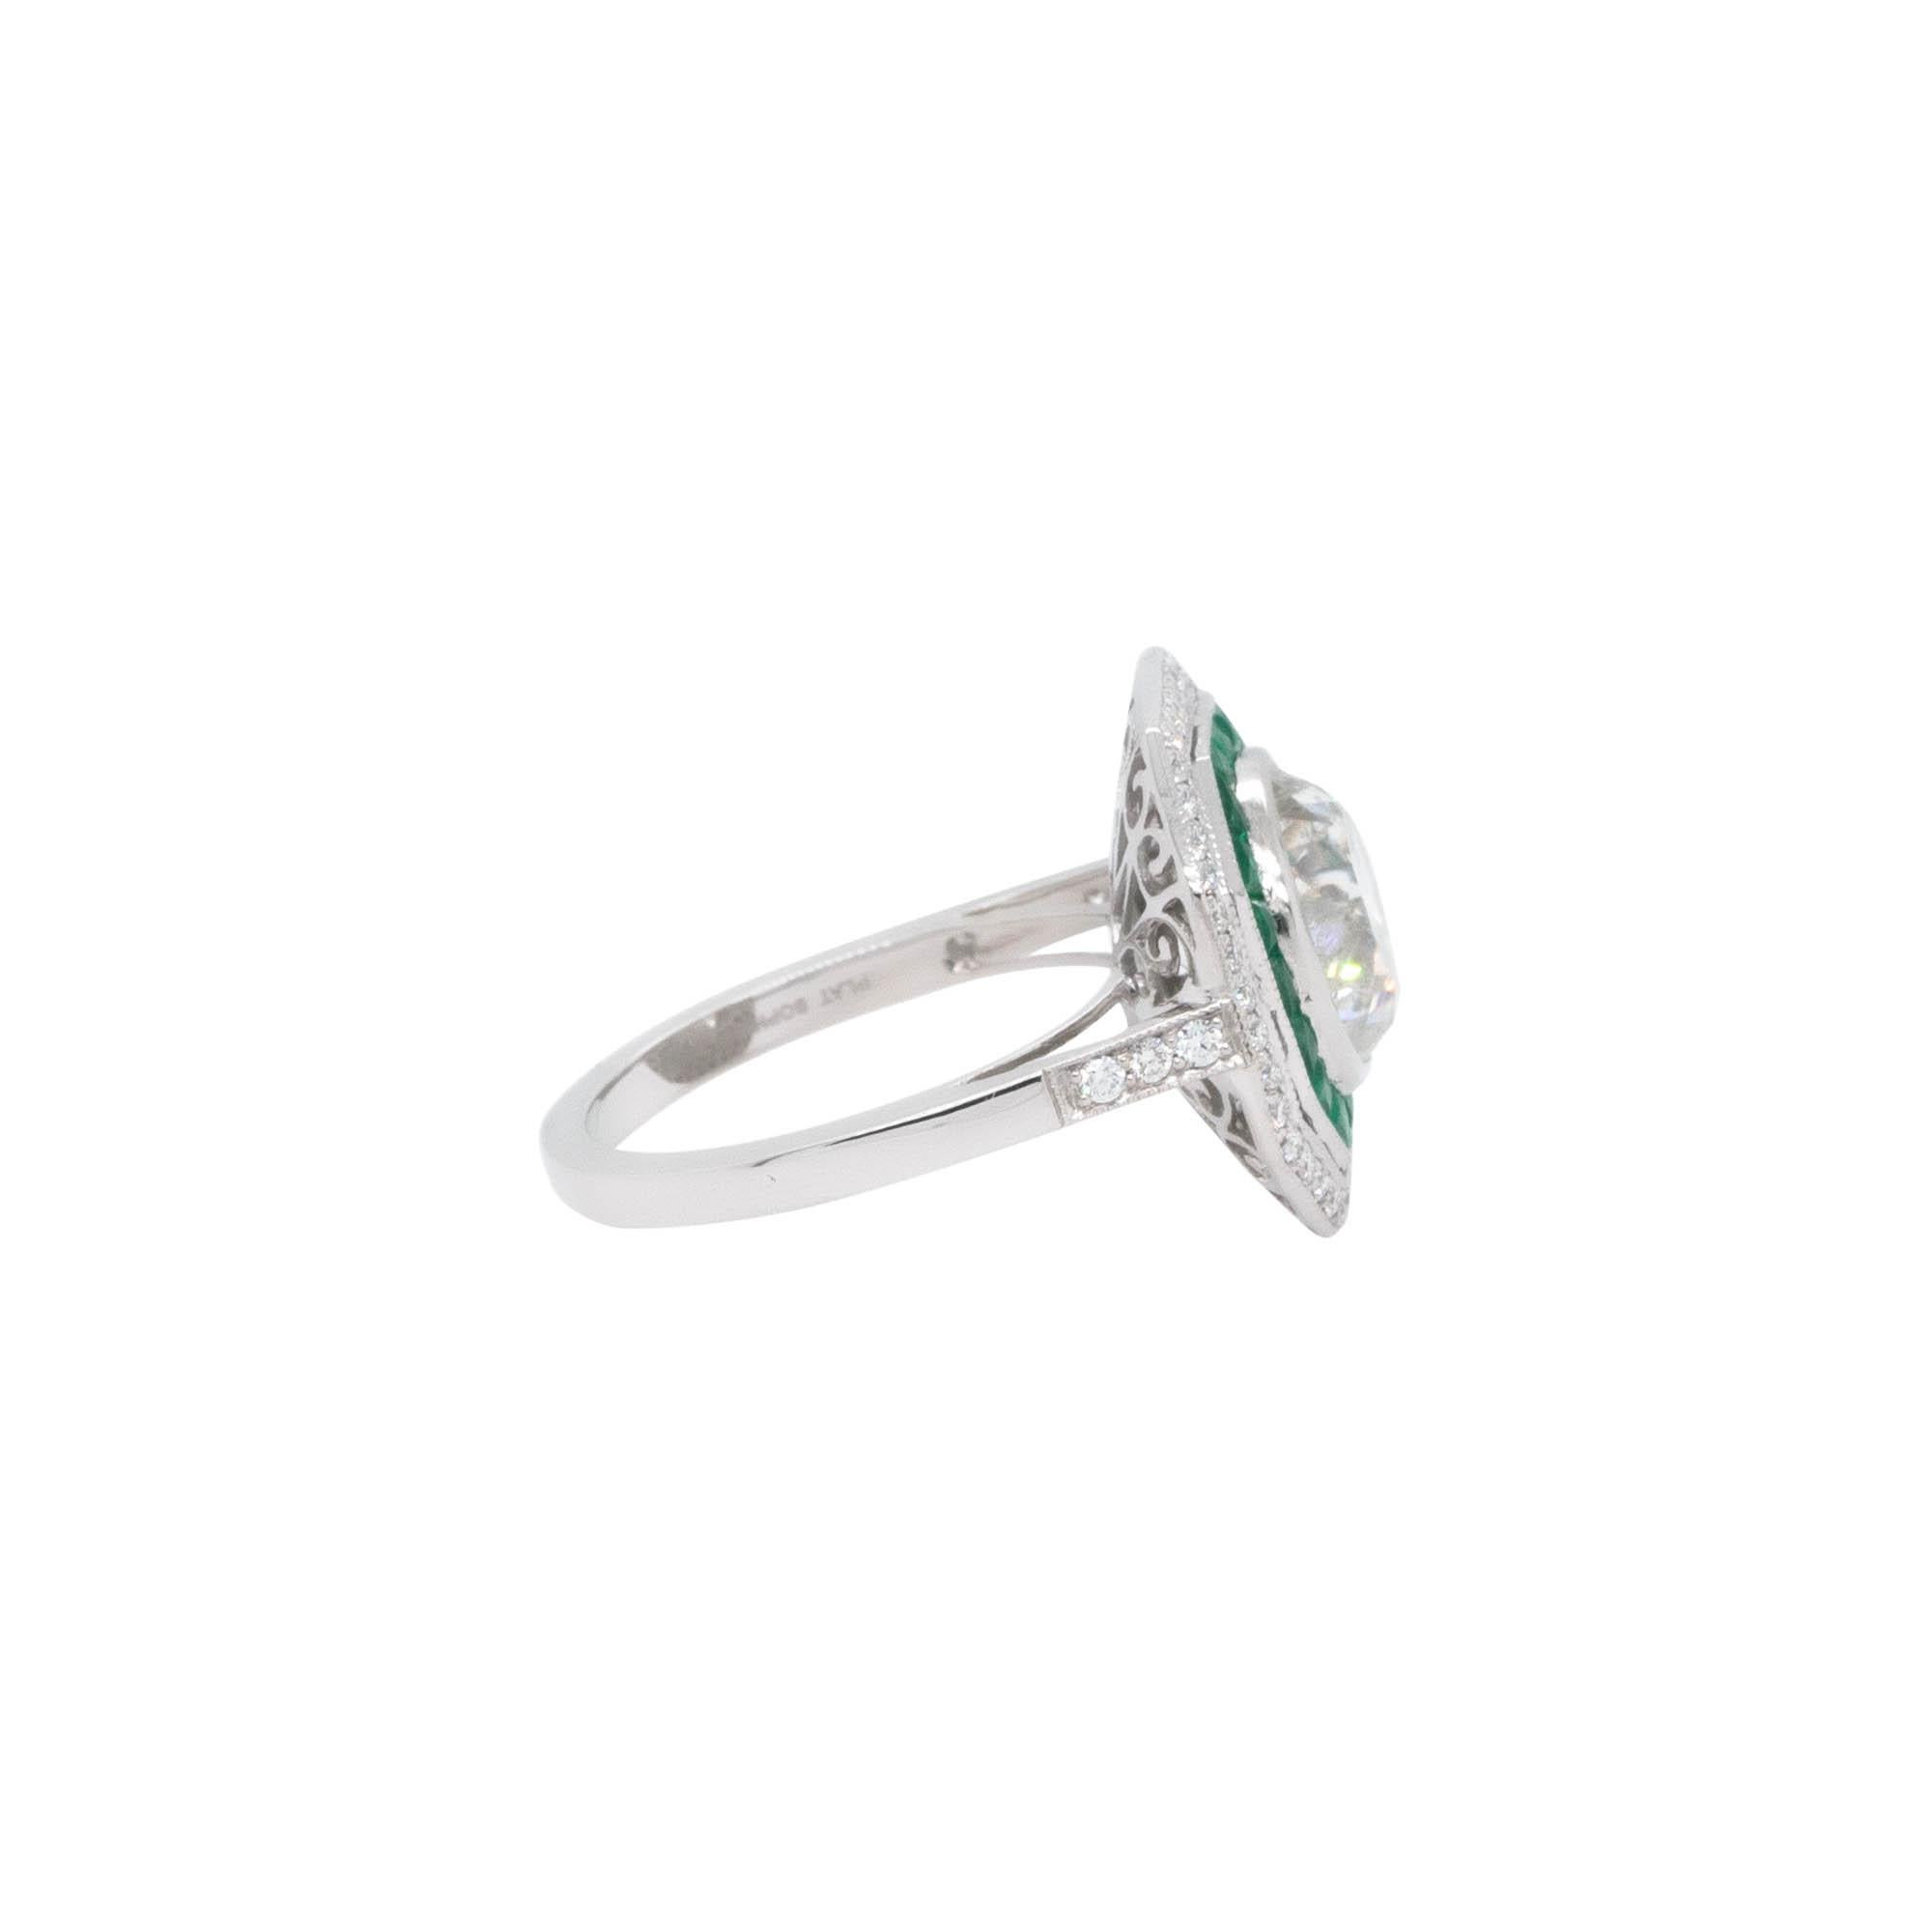 3.66 Carat Natural Round Brilliant Diamond & Emerald Ring In New Condition For Sale In Boca Raton, FL